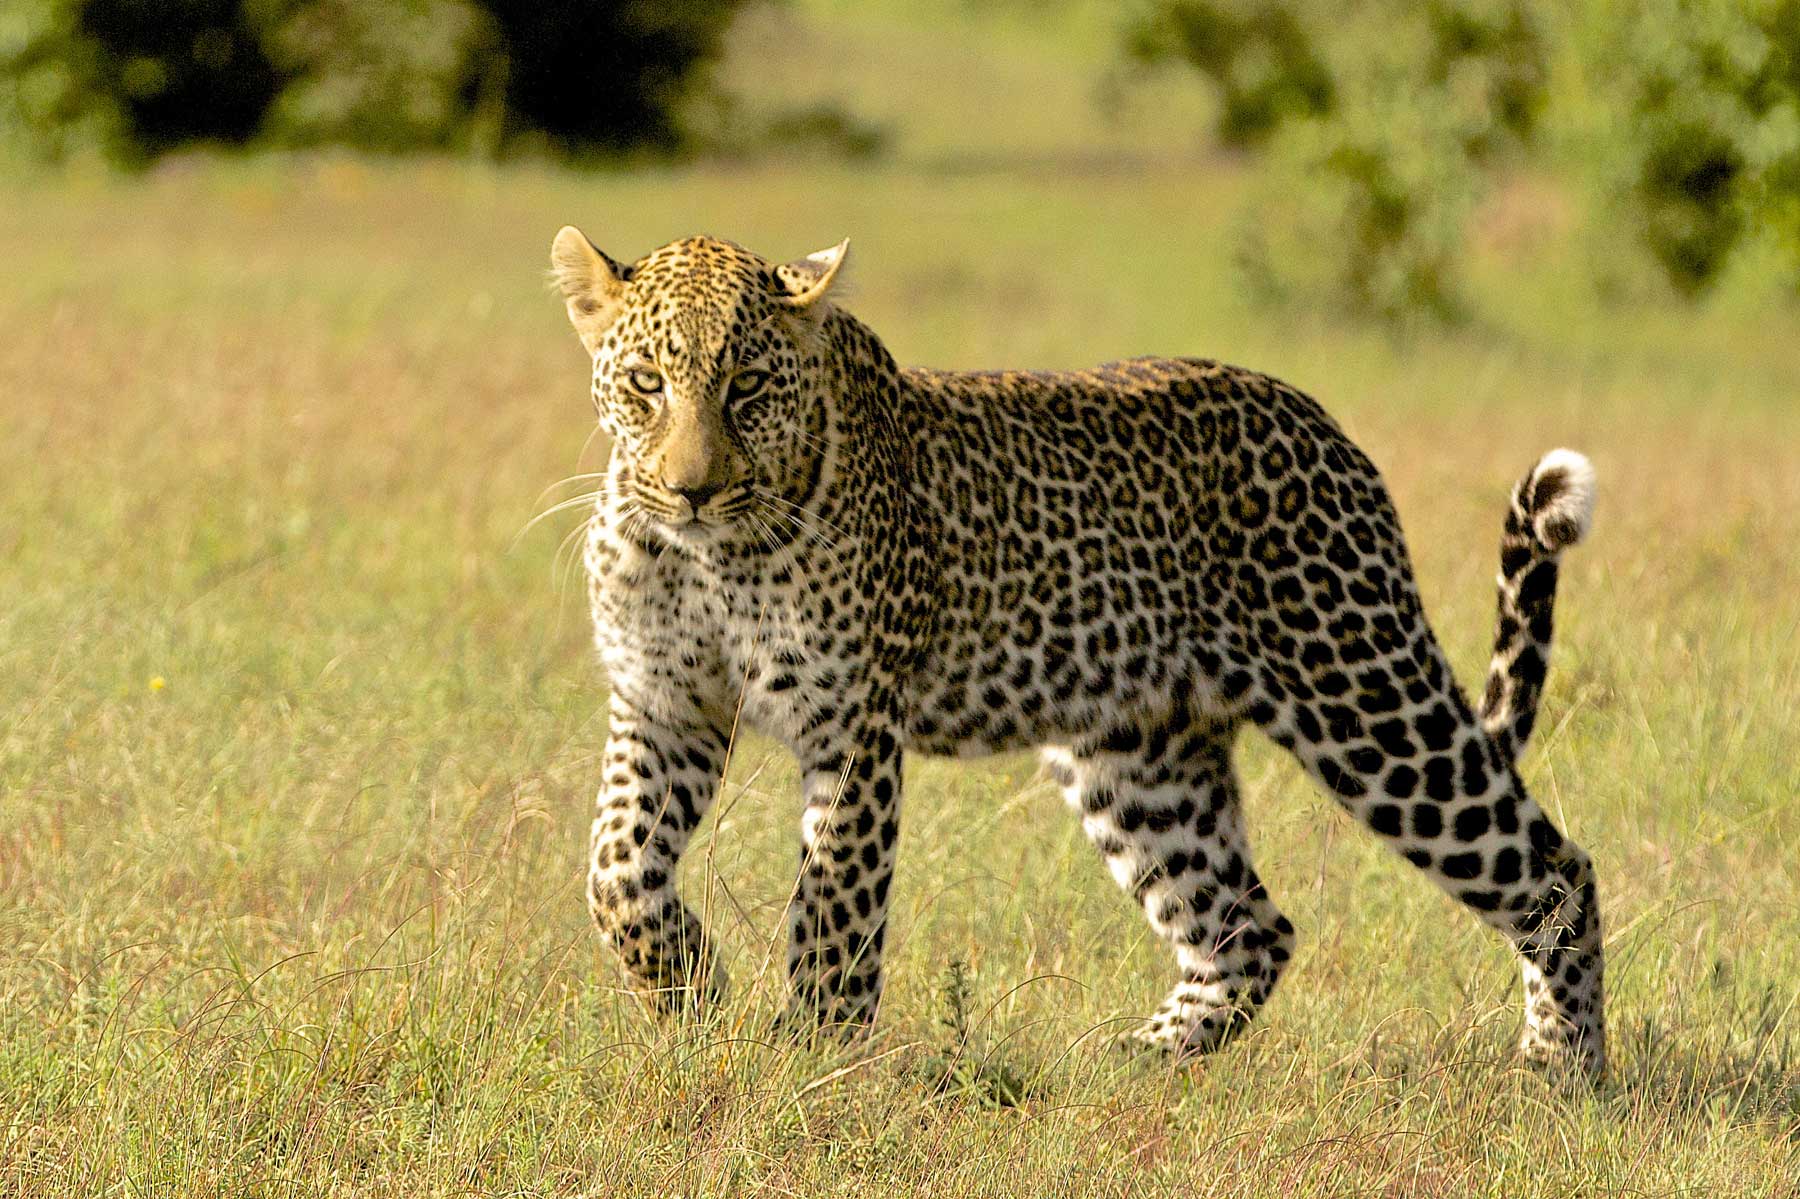 Leopard on Walk - Warren Samuels